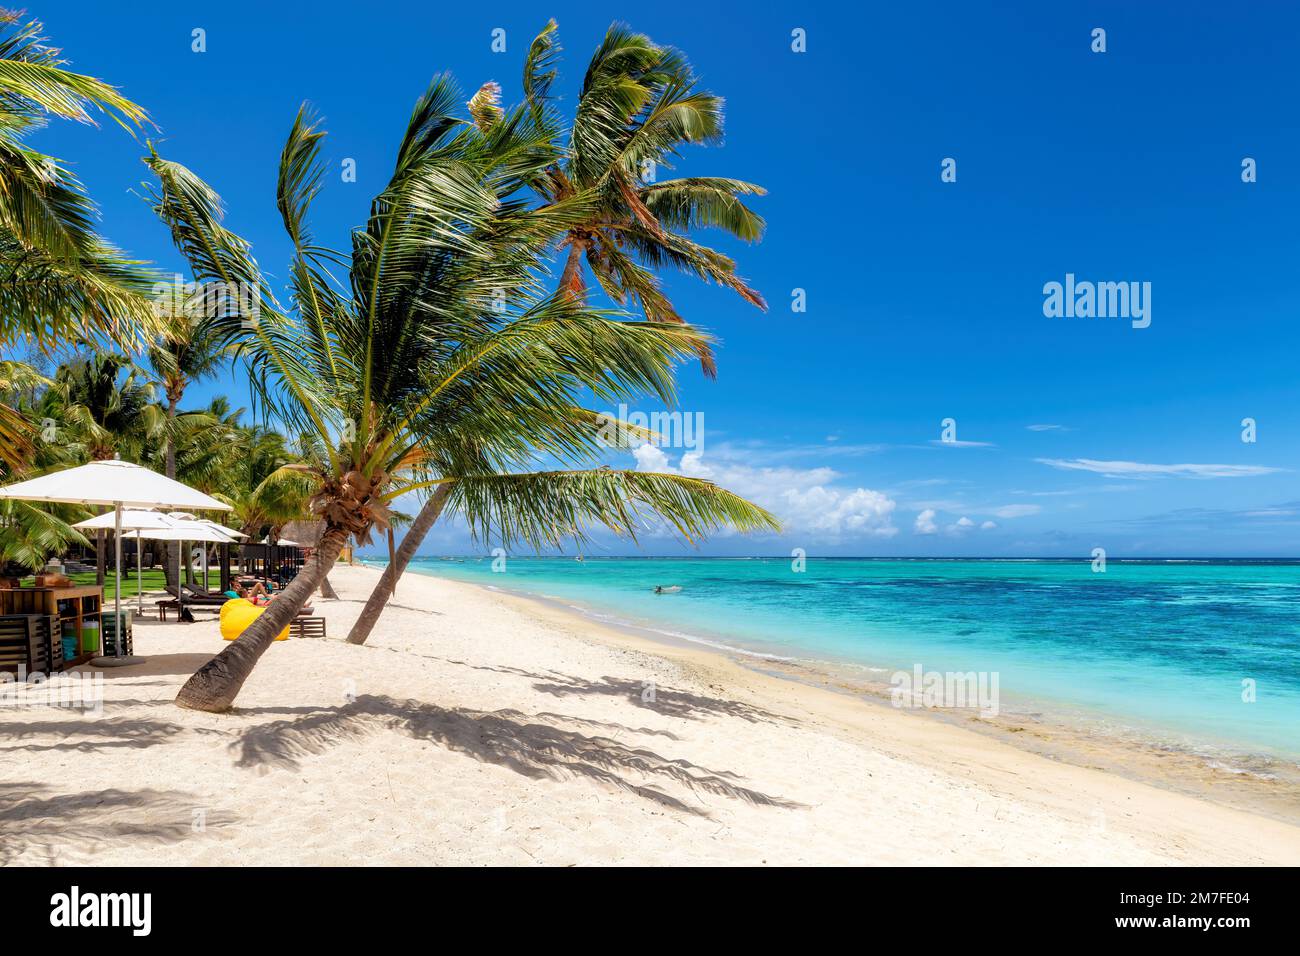 Palmiers sur la plage Paradise dans un complexe tropical sur l'île Maurice. Banque D'Images